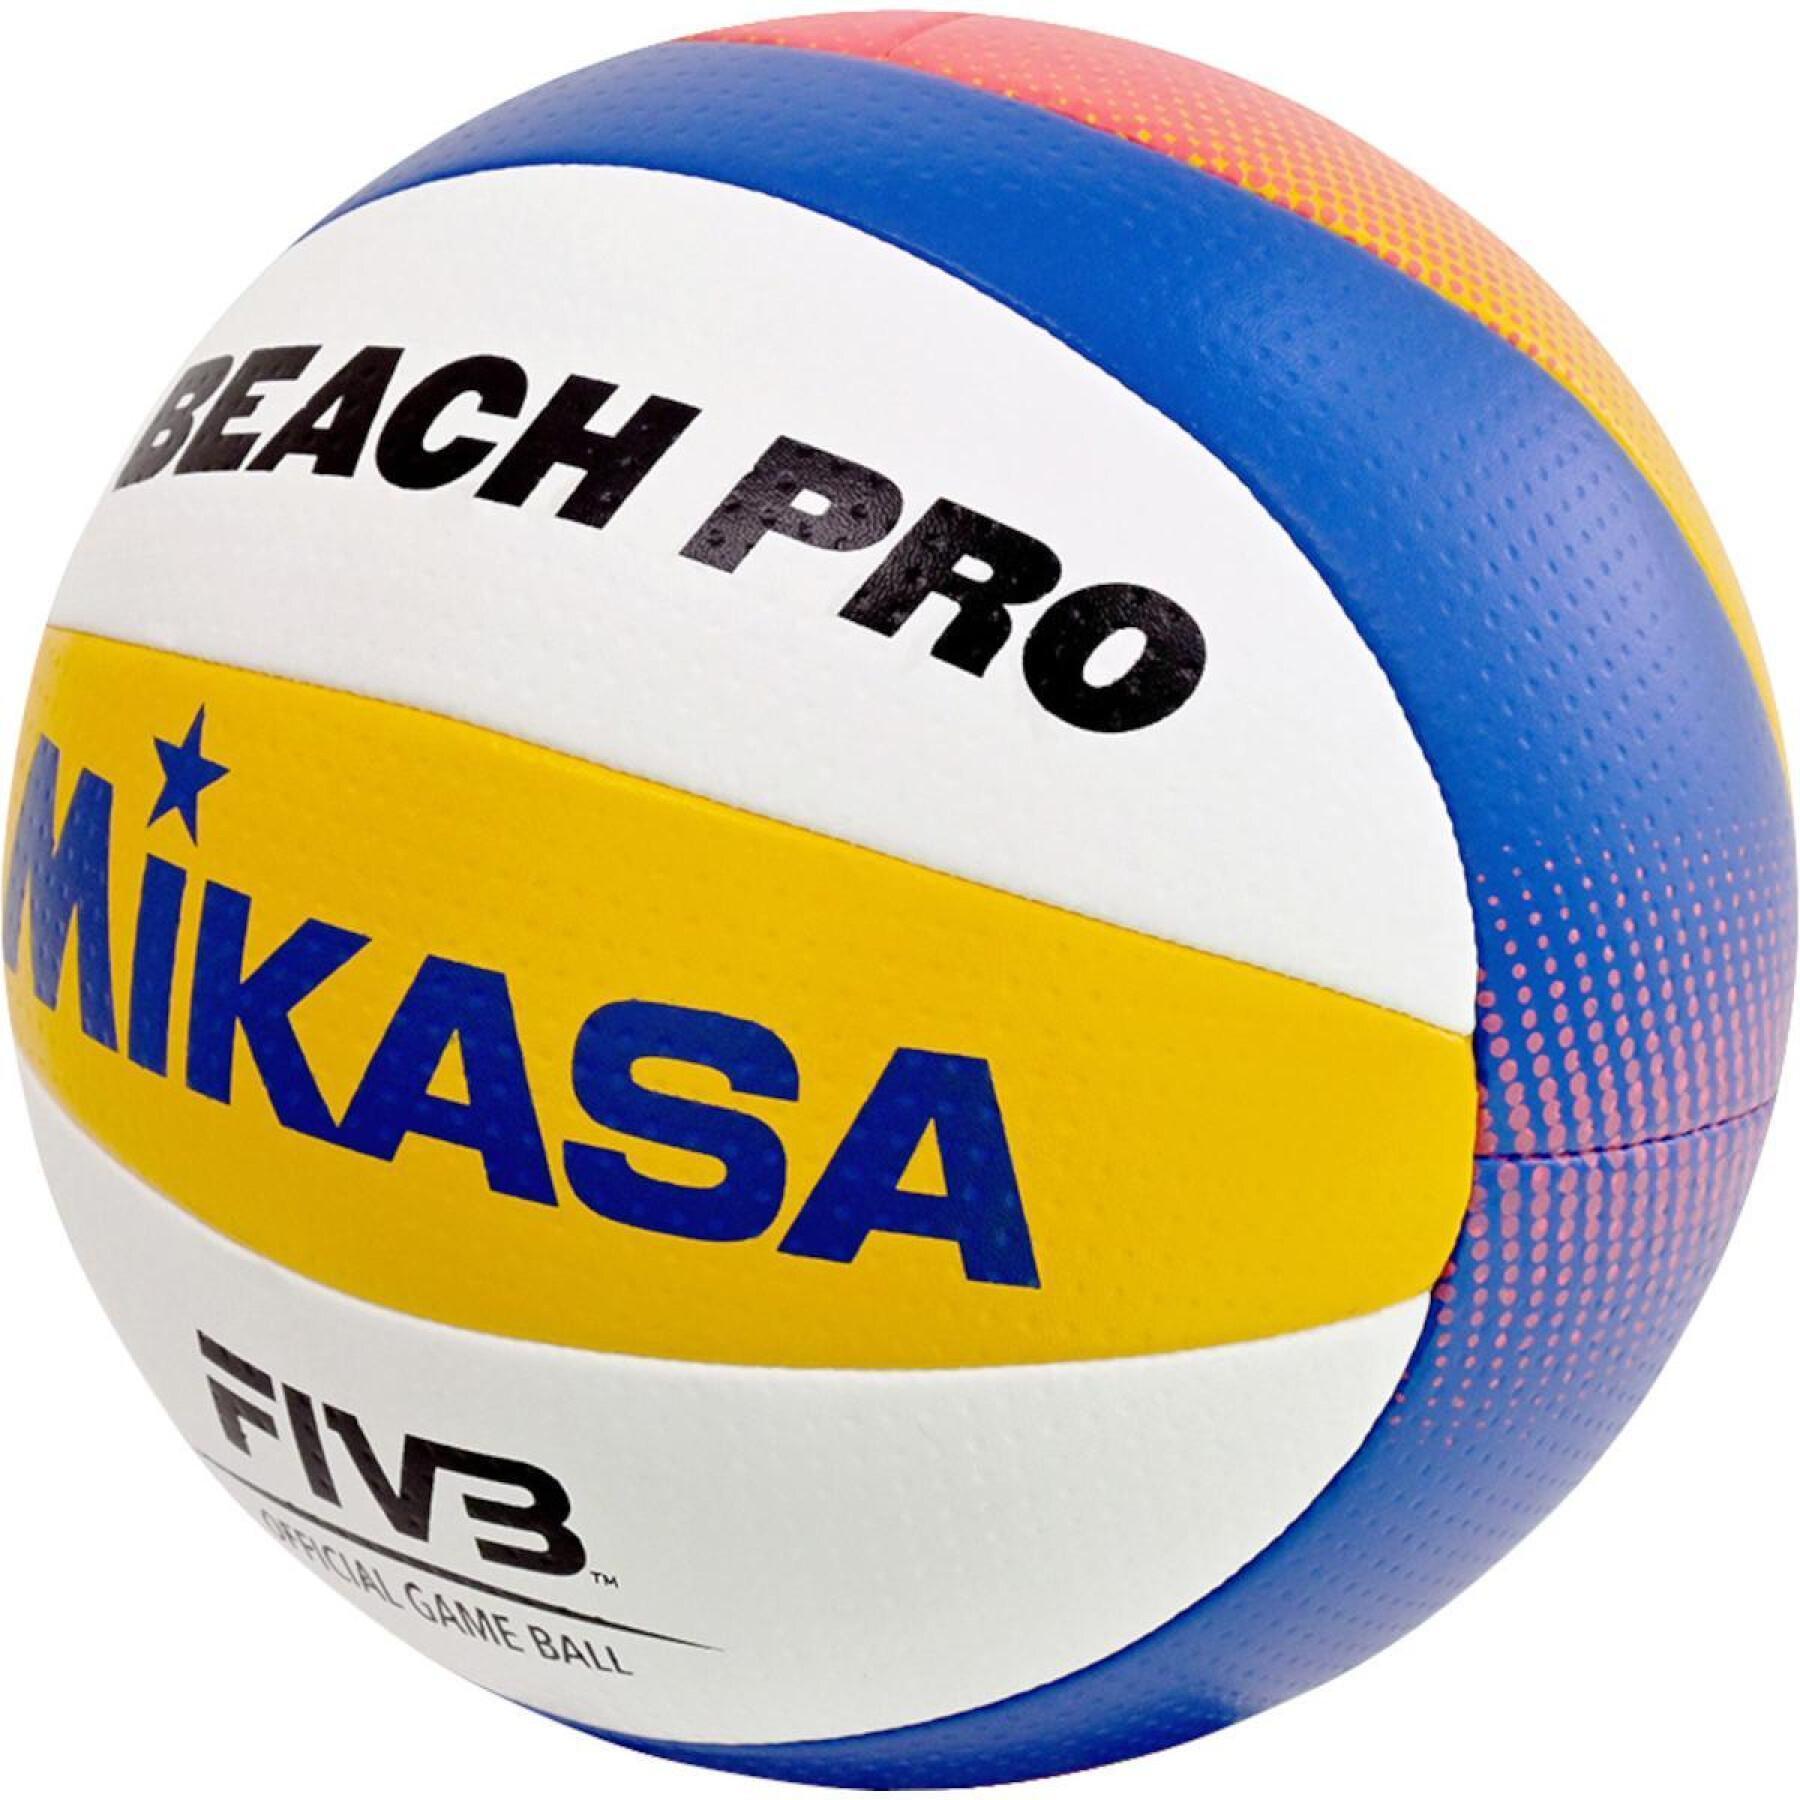 Balón de voleibol Mikasa Beach Pro BV550C FIVB Approved